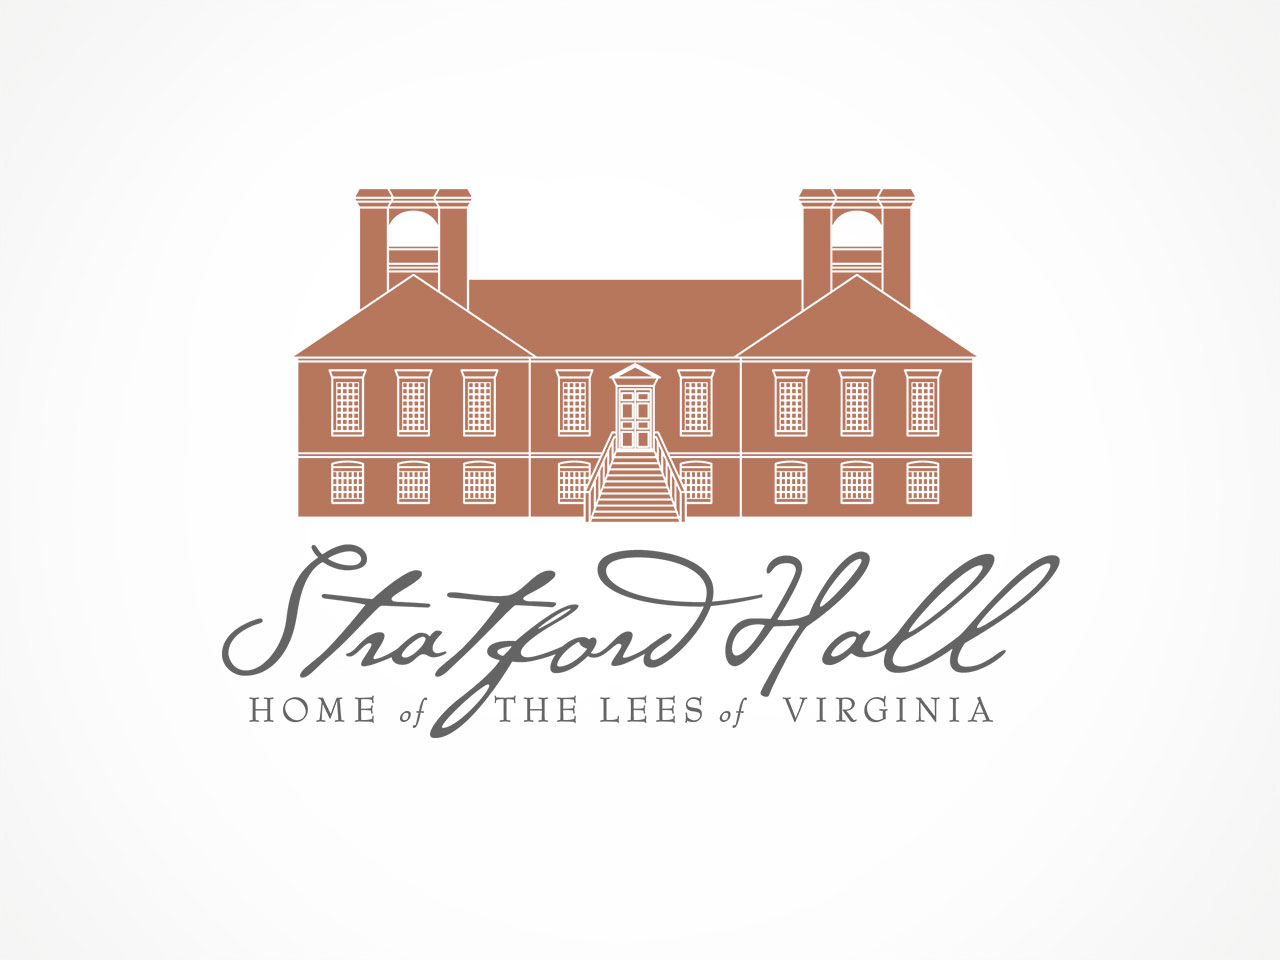 Stratford Hall logo